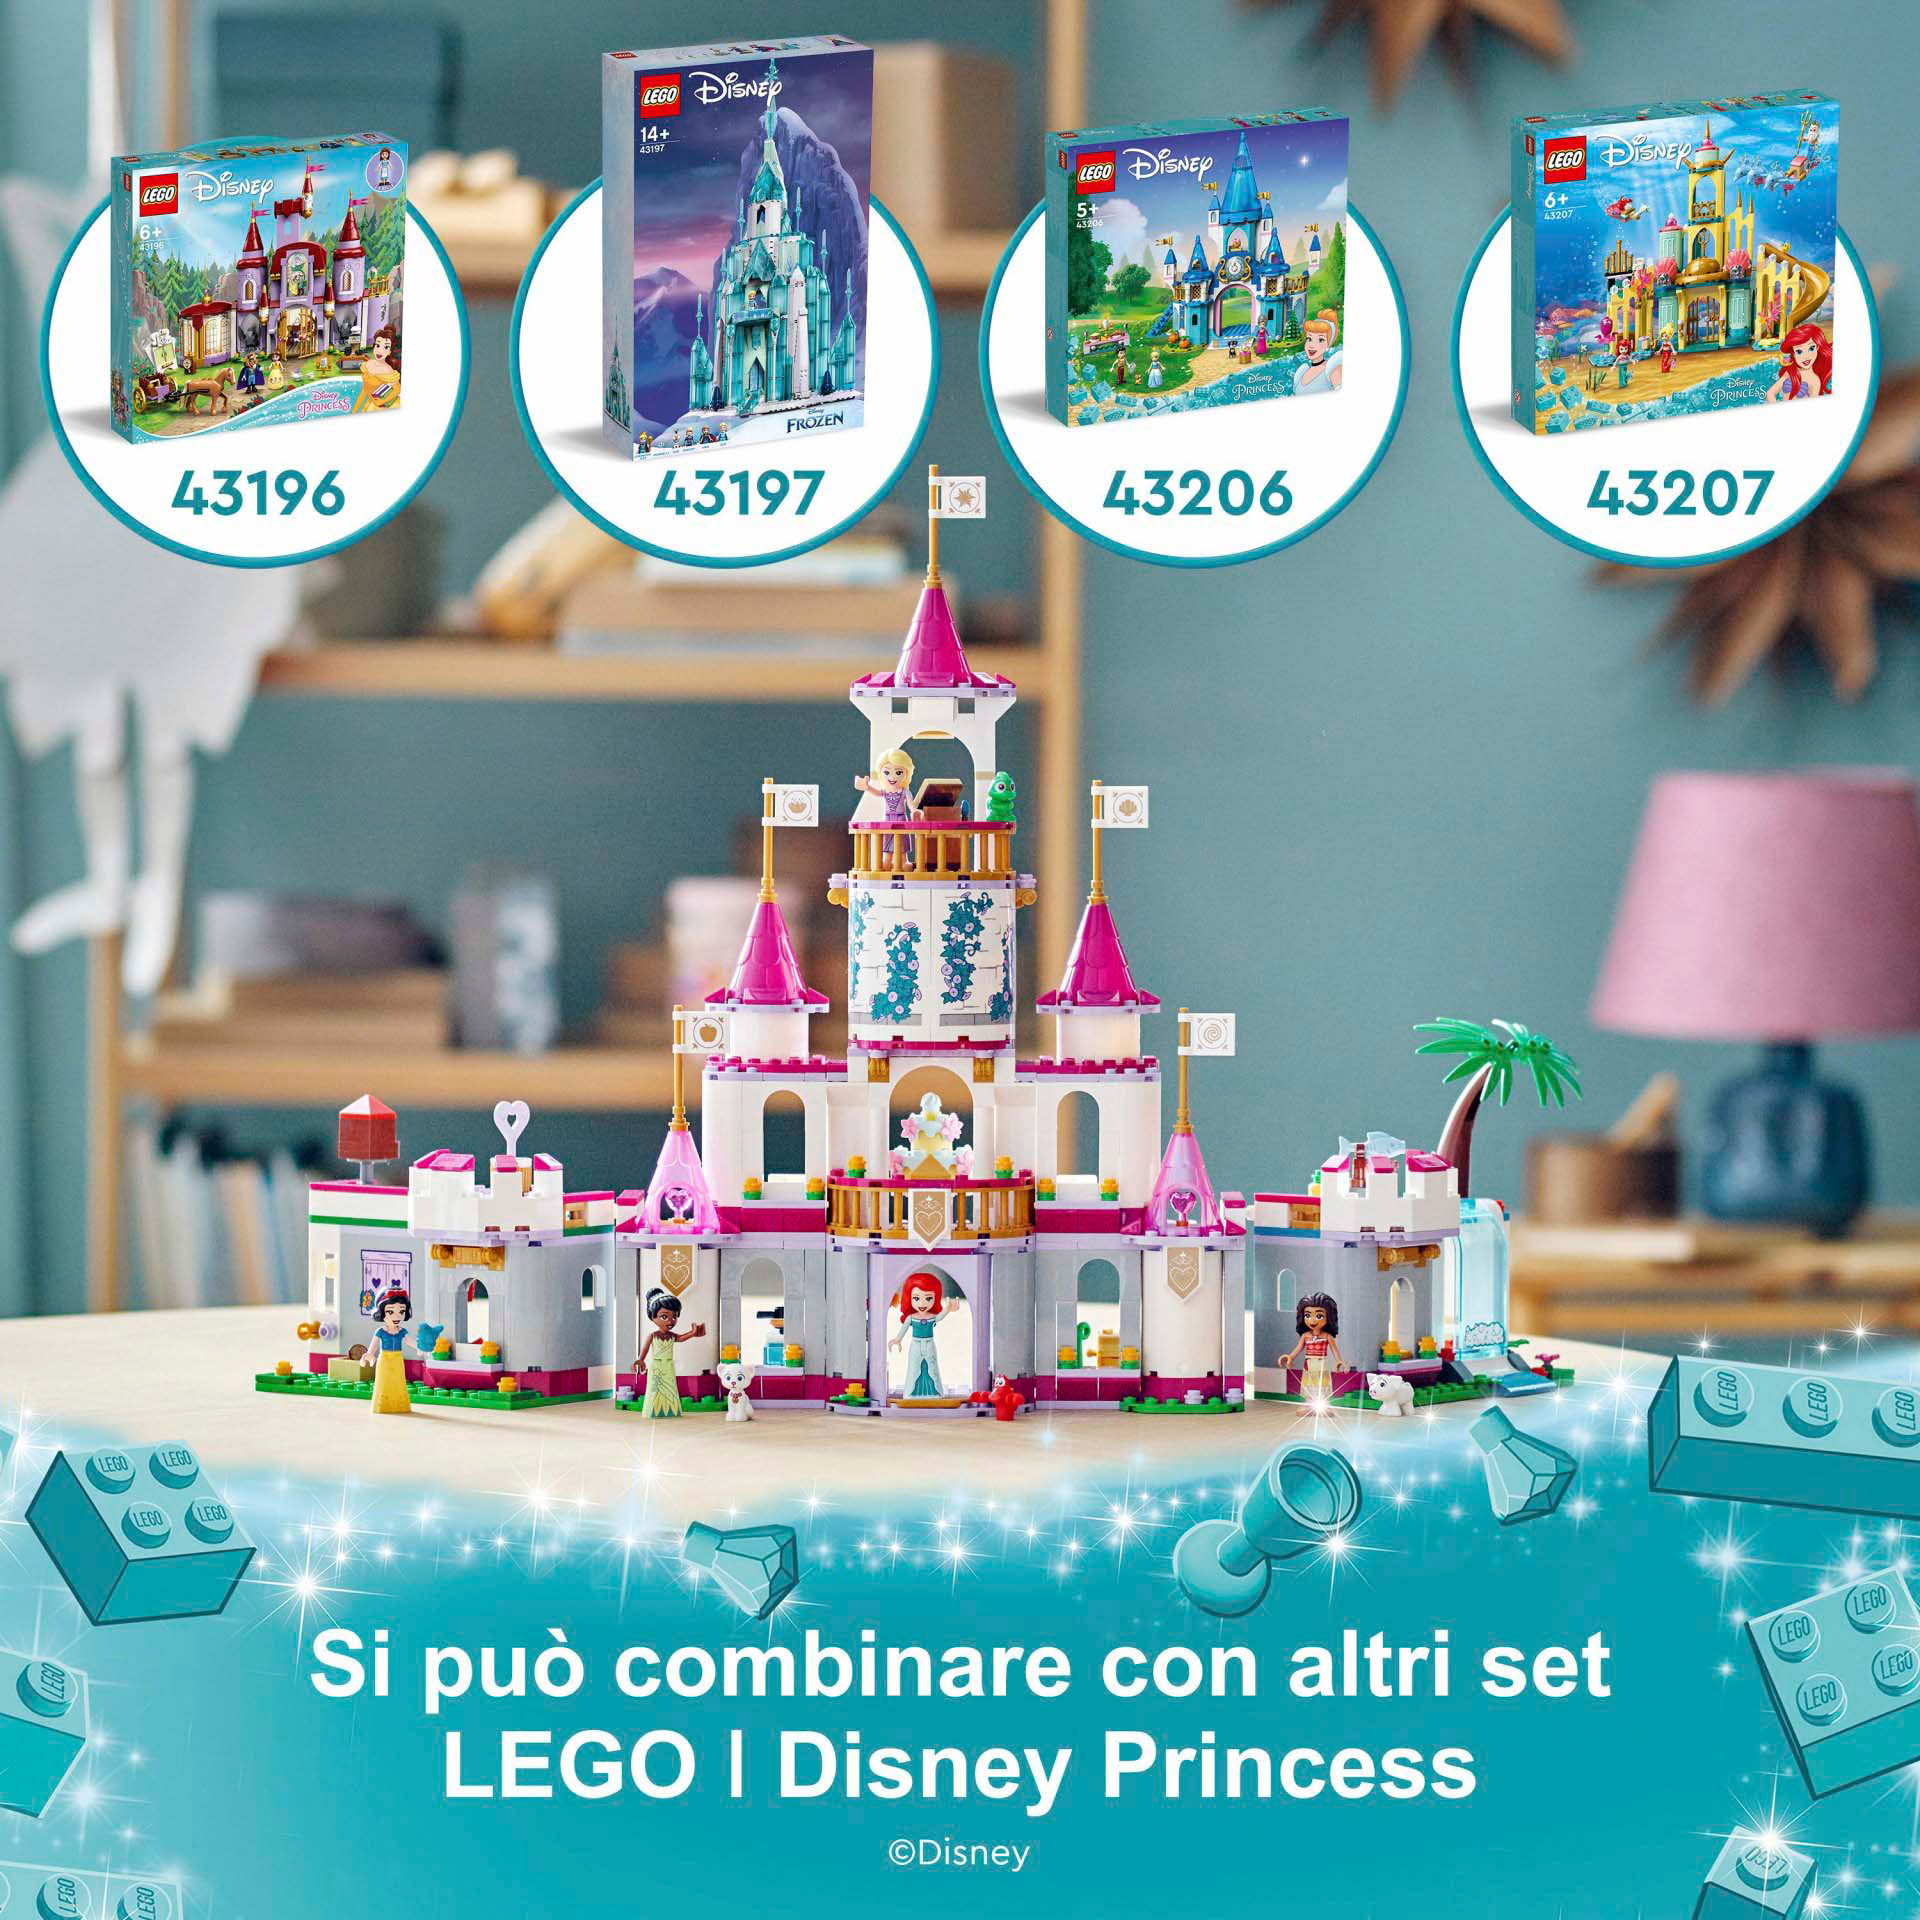 LEGO | Disney Princess Il Grande Castello delle Avventure, Set Costruzioni Gioca 43205, , large